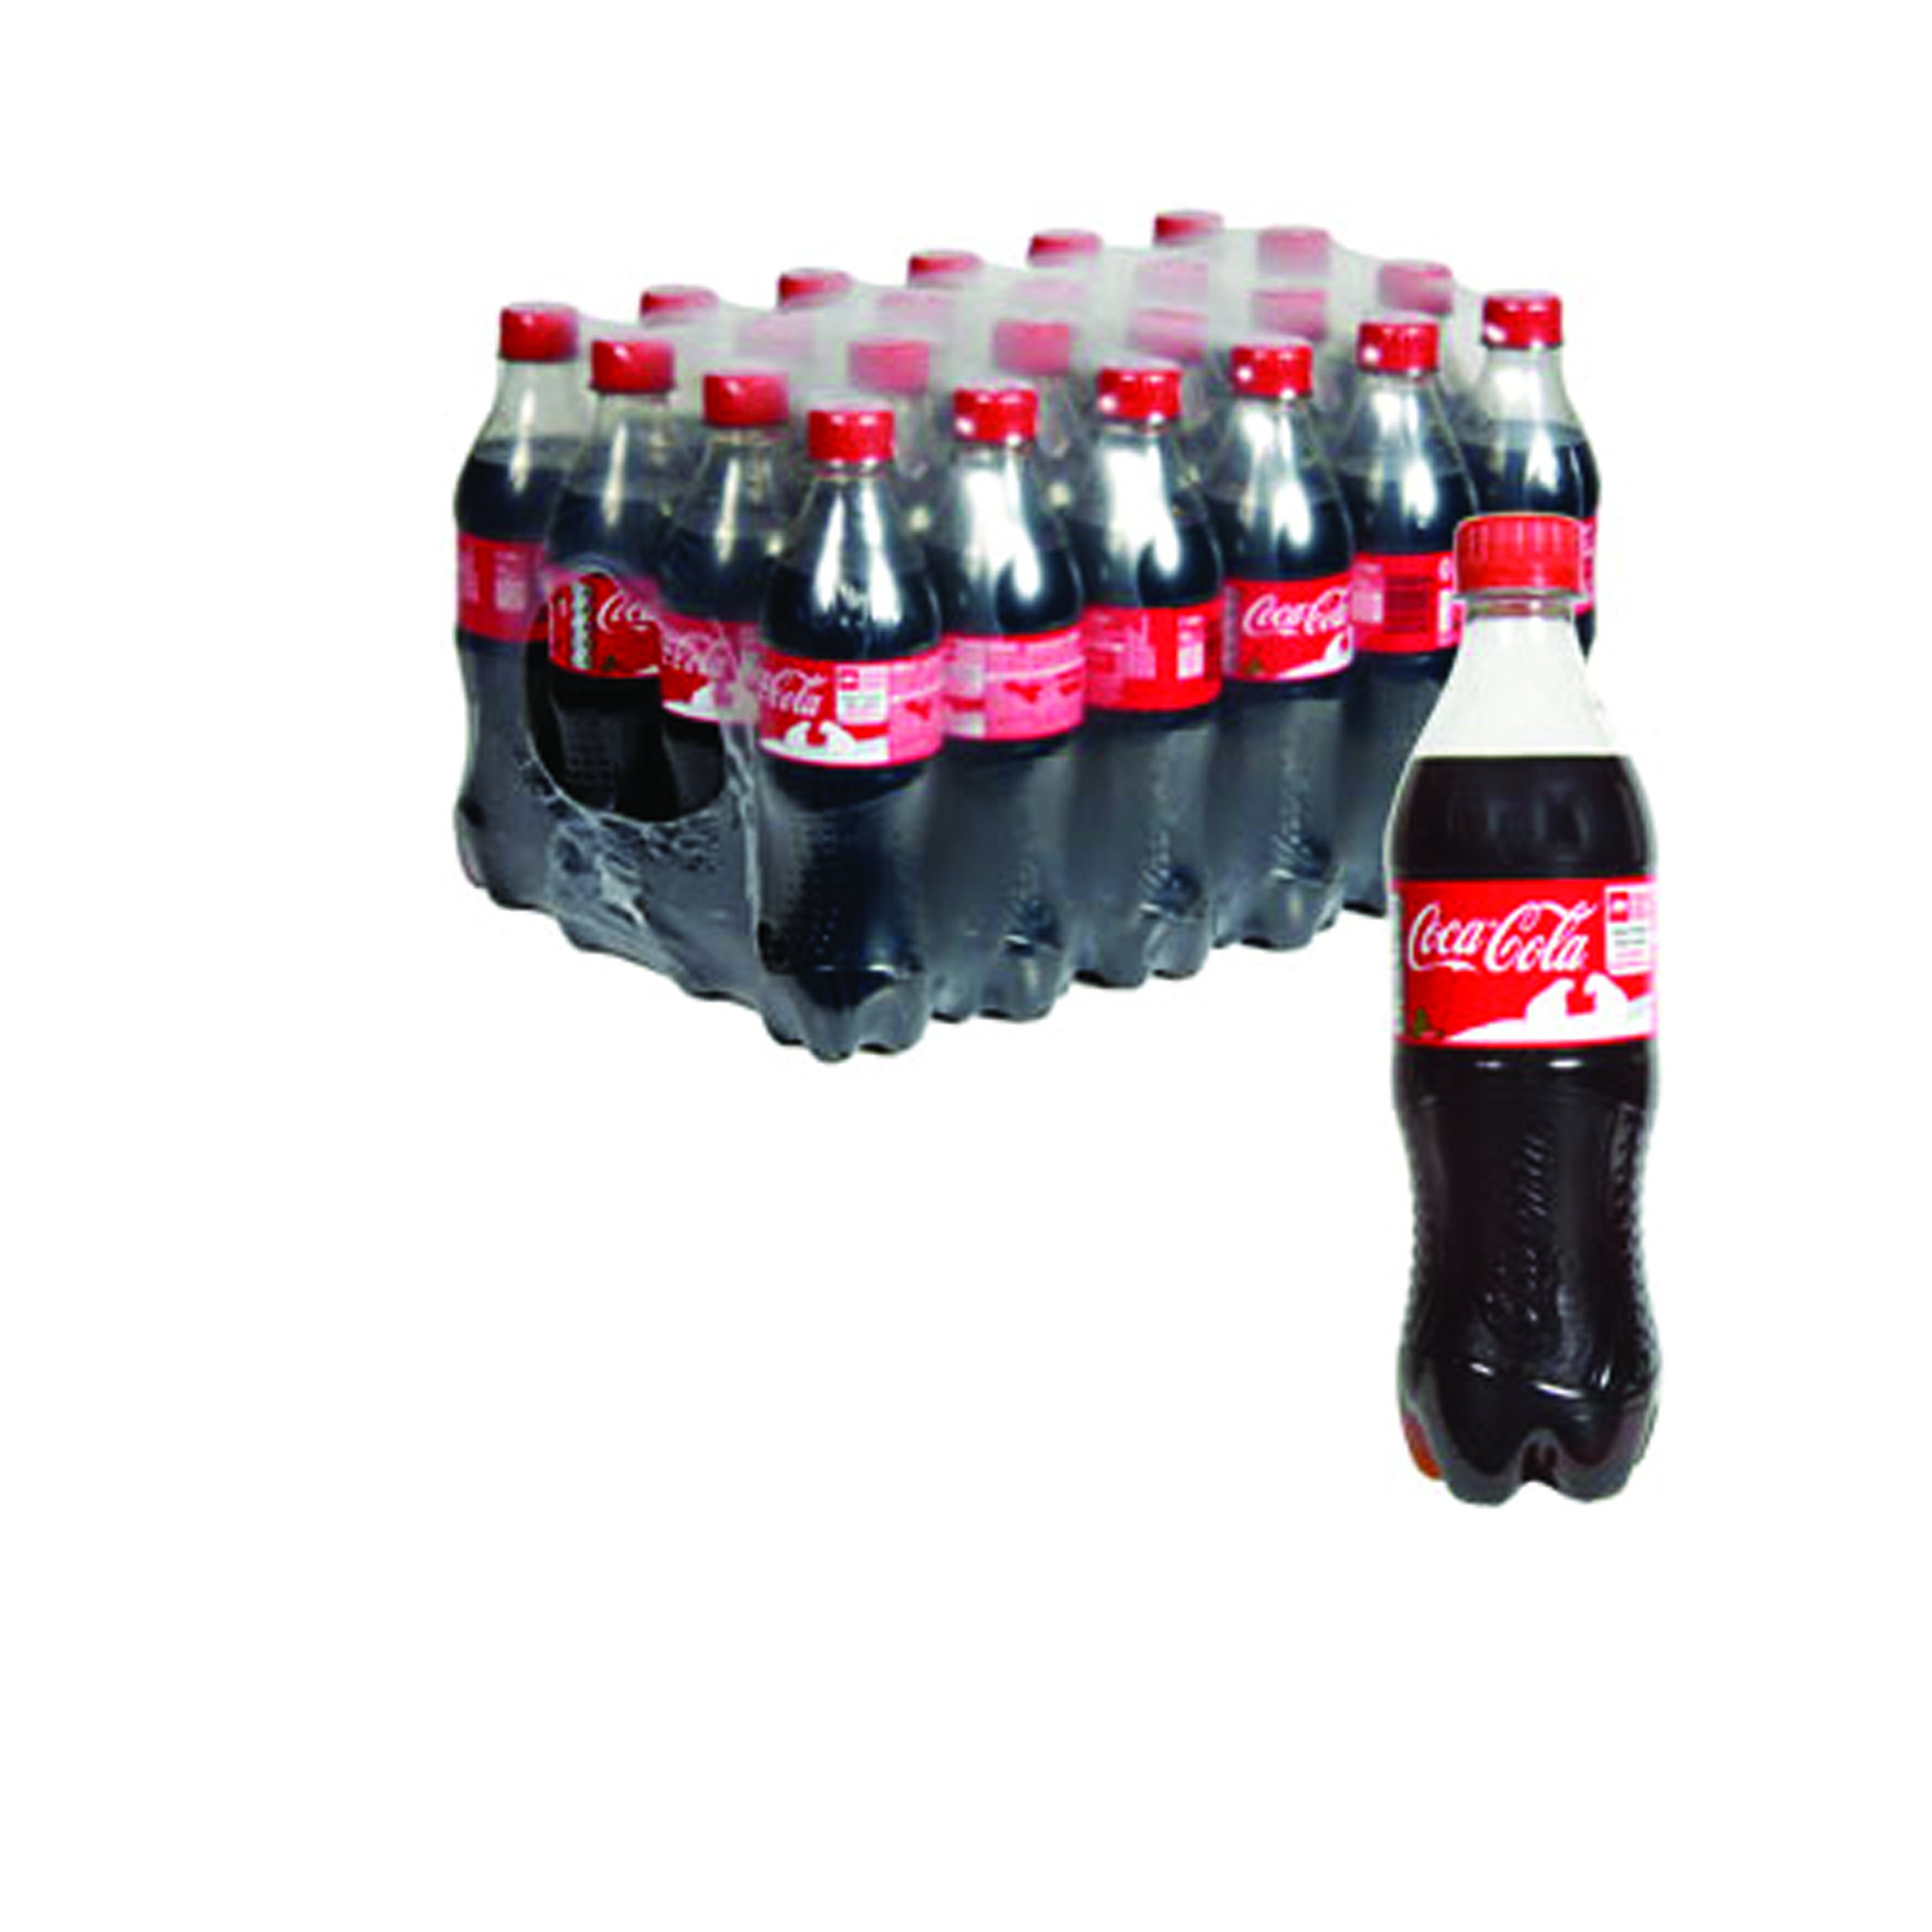 Coke – 2 Liter Bottle 8pk Case – New York Beverage